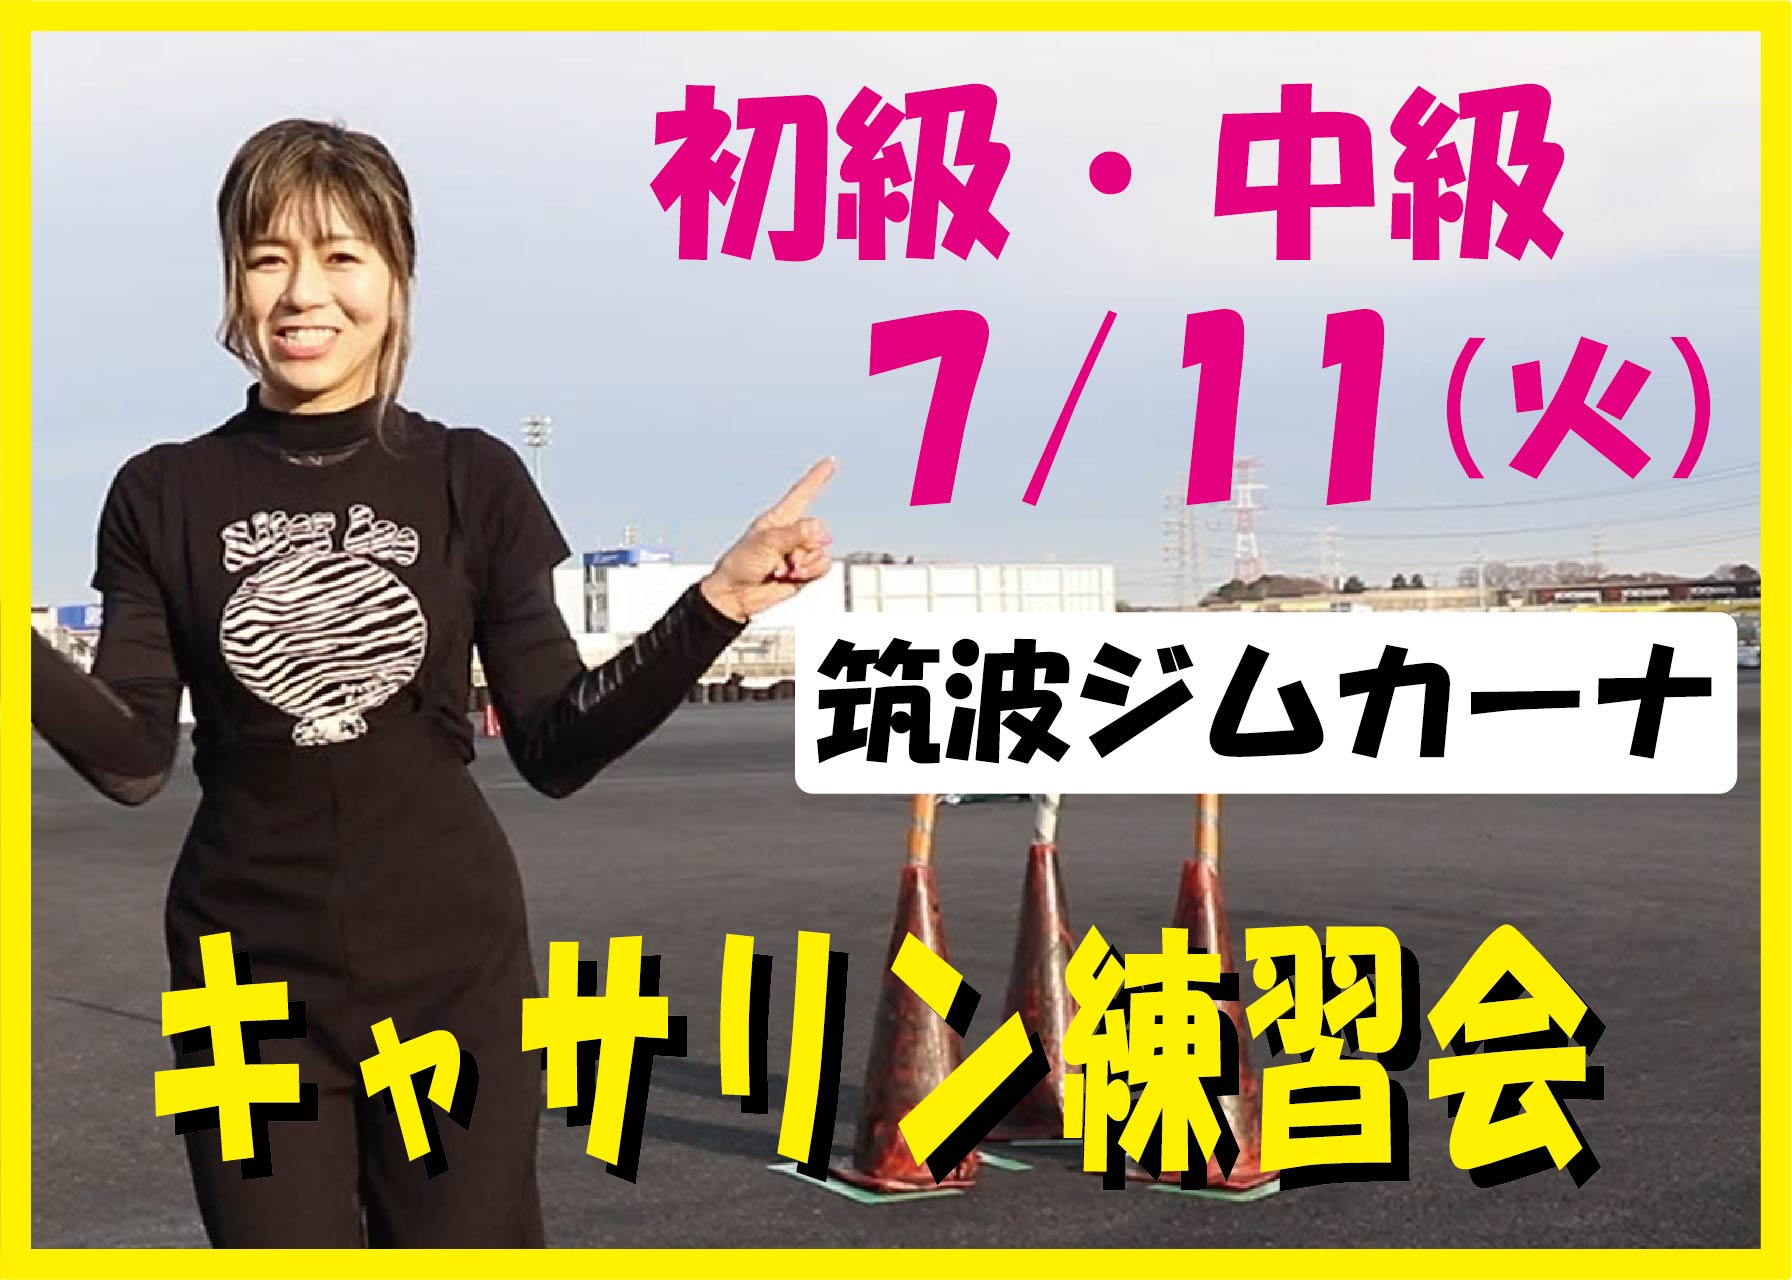 7月11日(火) キャサリン練習会 筑波サーキットジムカーナ場